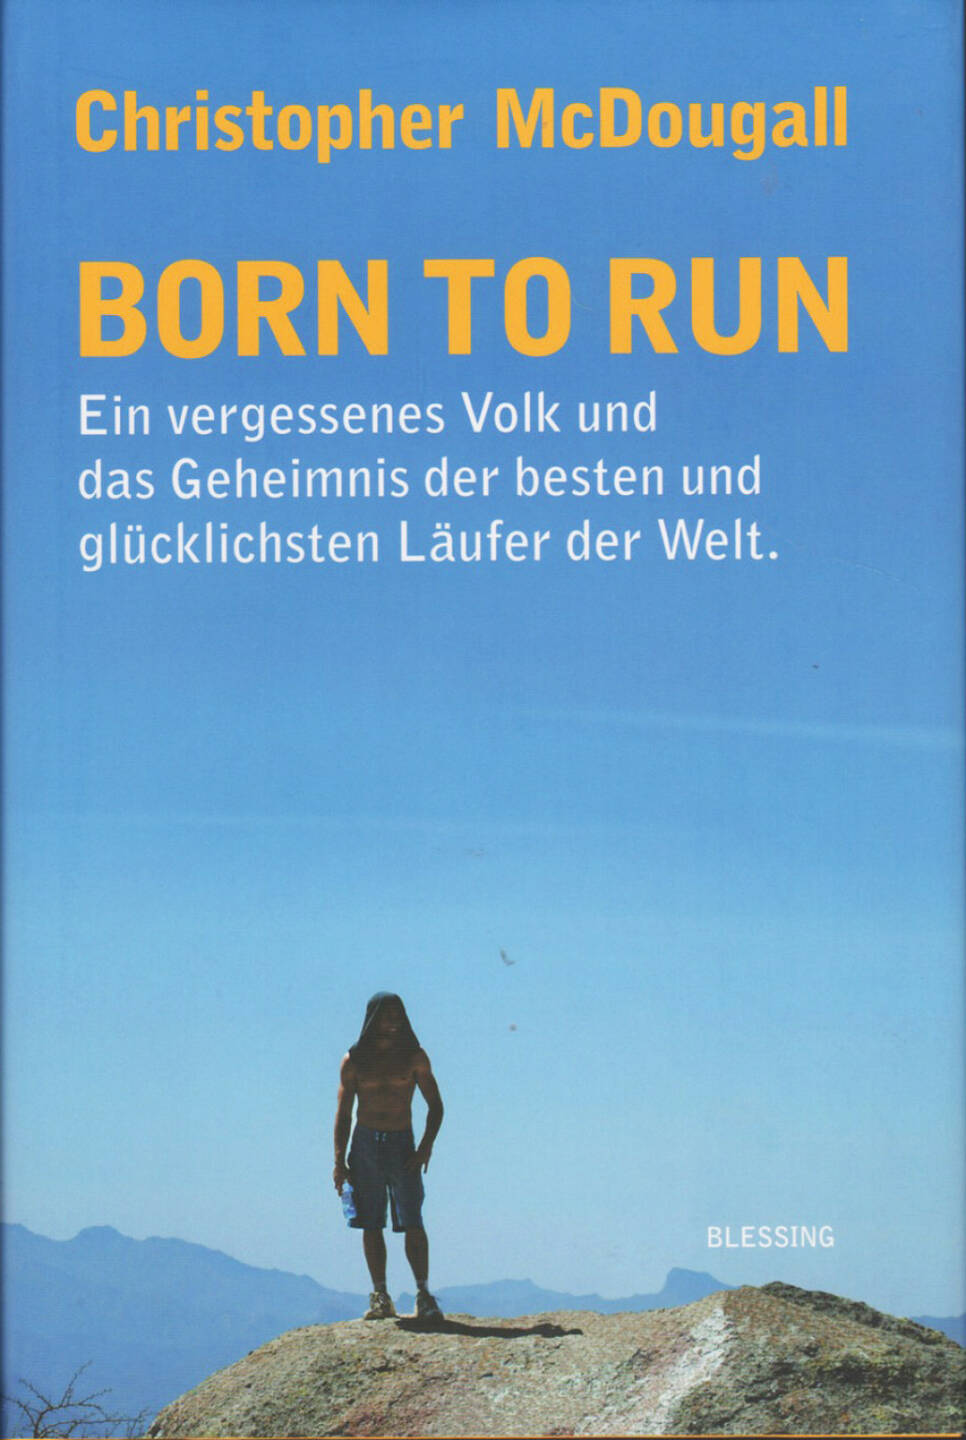 Christopher McDougall - Born to Run - http://runplugged.com/runbooks/show/christopher_mcdougall_-_born_to_run_ein_vergessenes_volk_und_das_geheimnis_der_besten_und_glucklichsten_laufer_der_welt